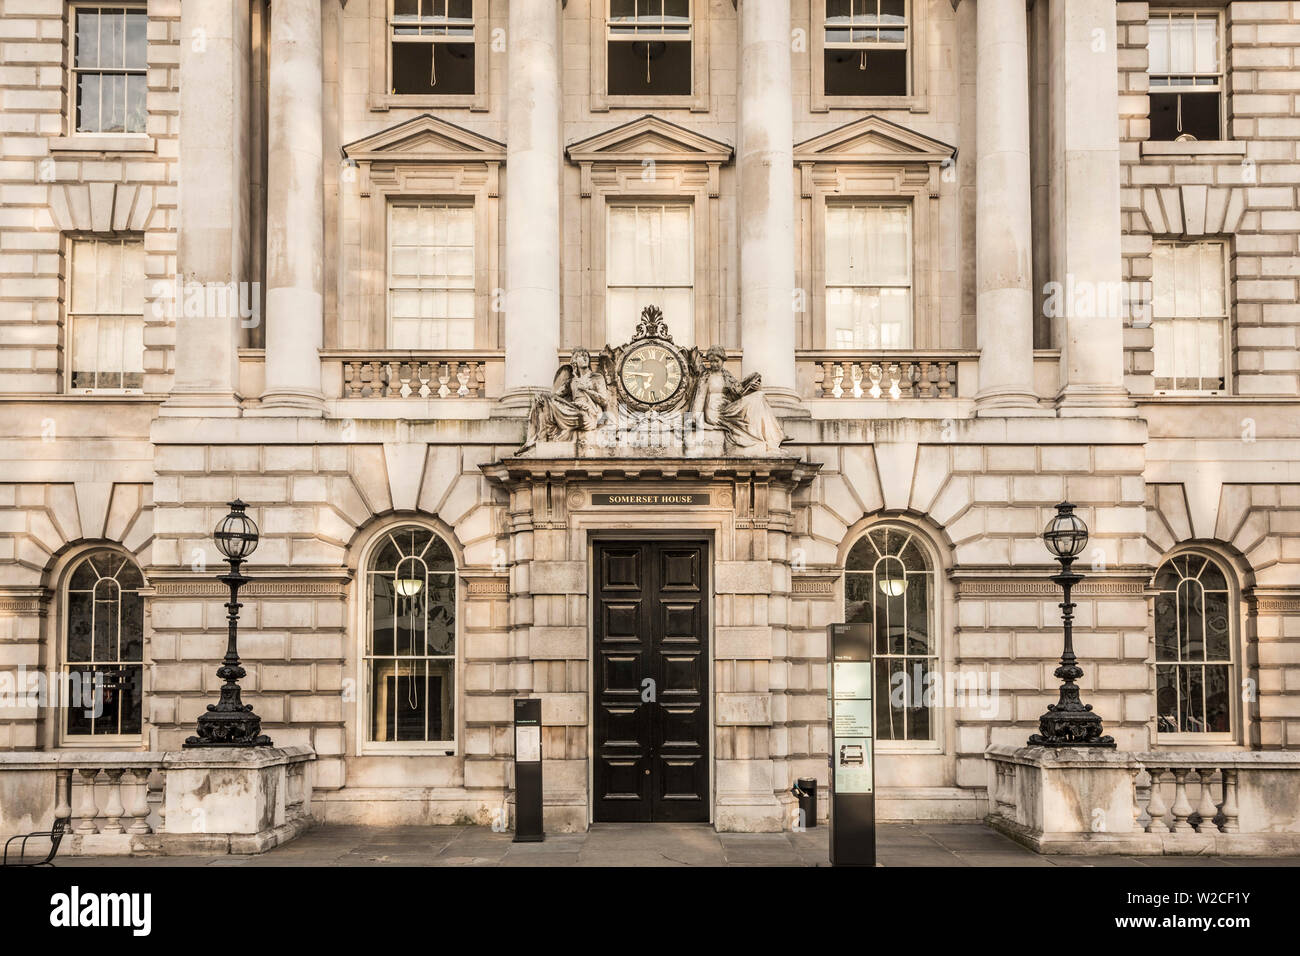 Somerset House, London, England, UK Stock Photo